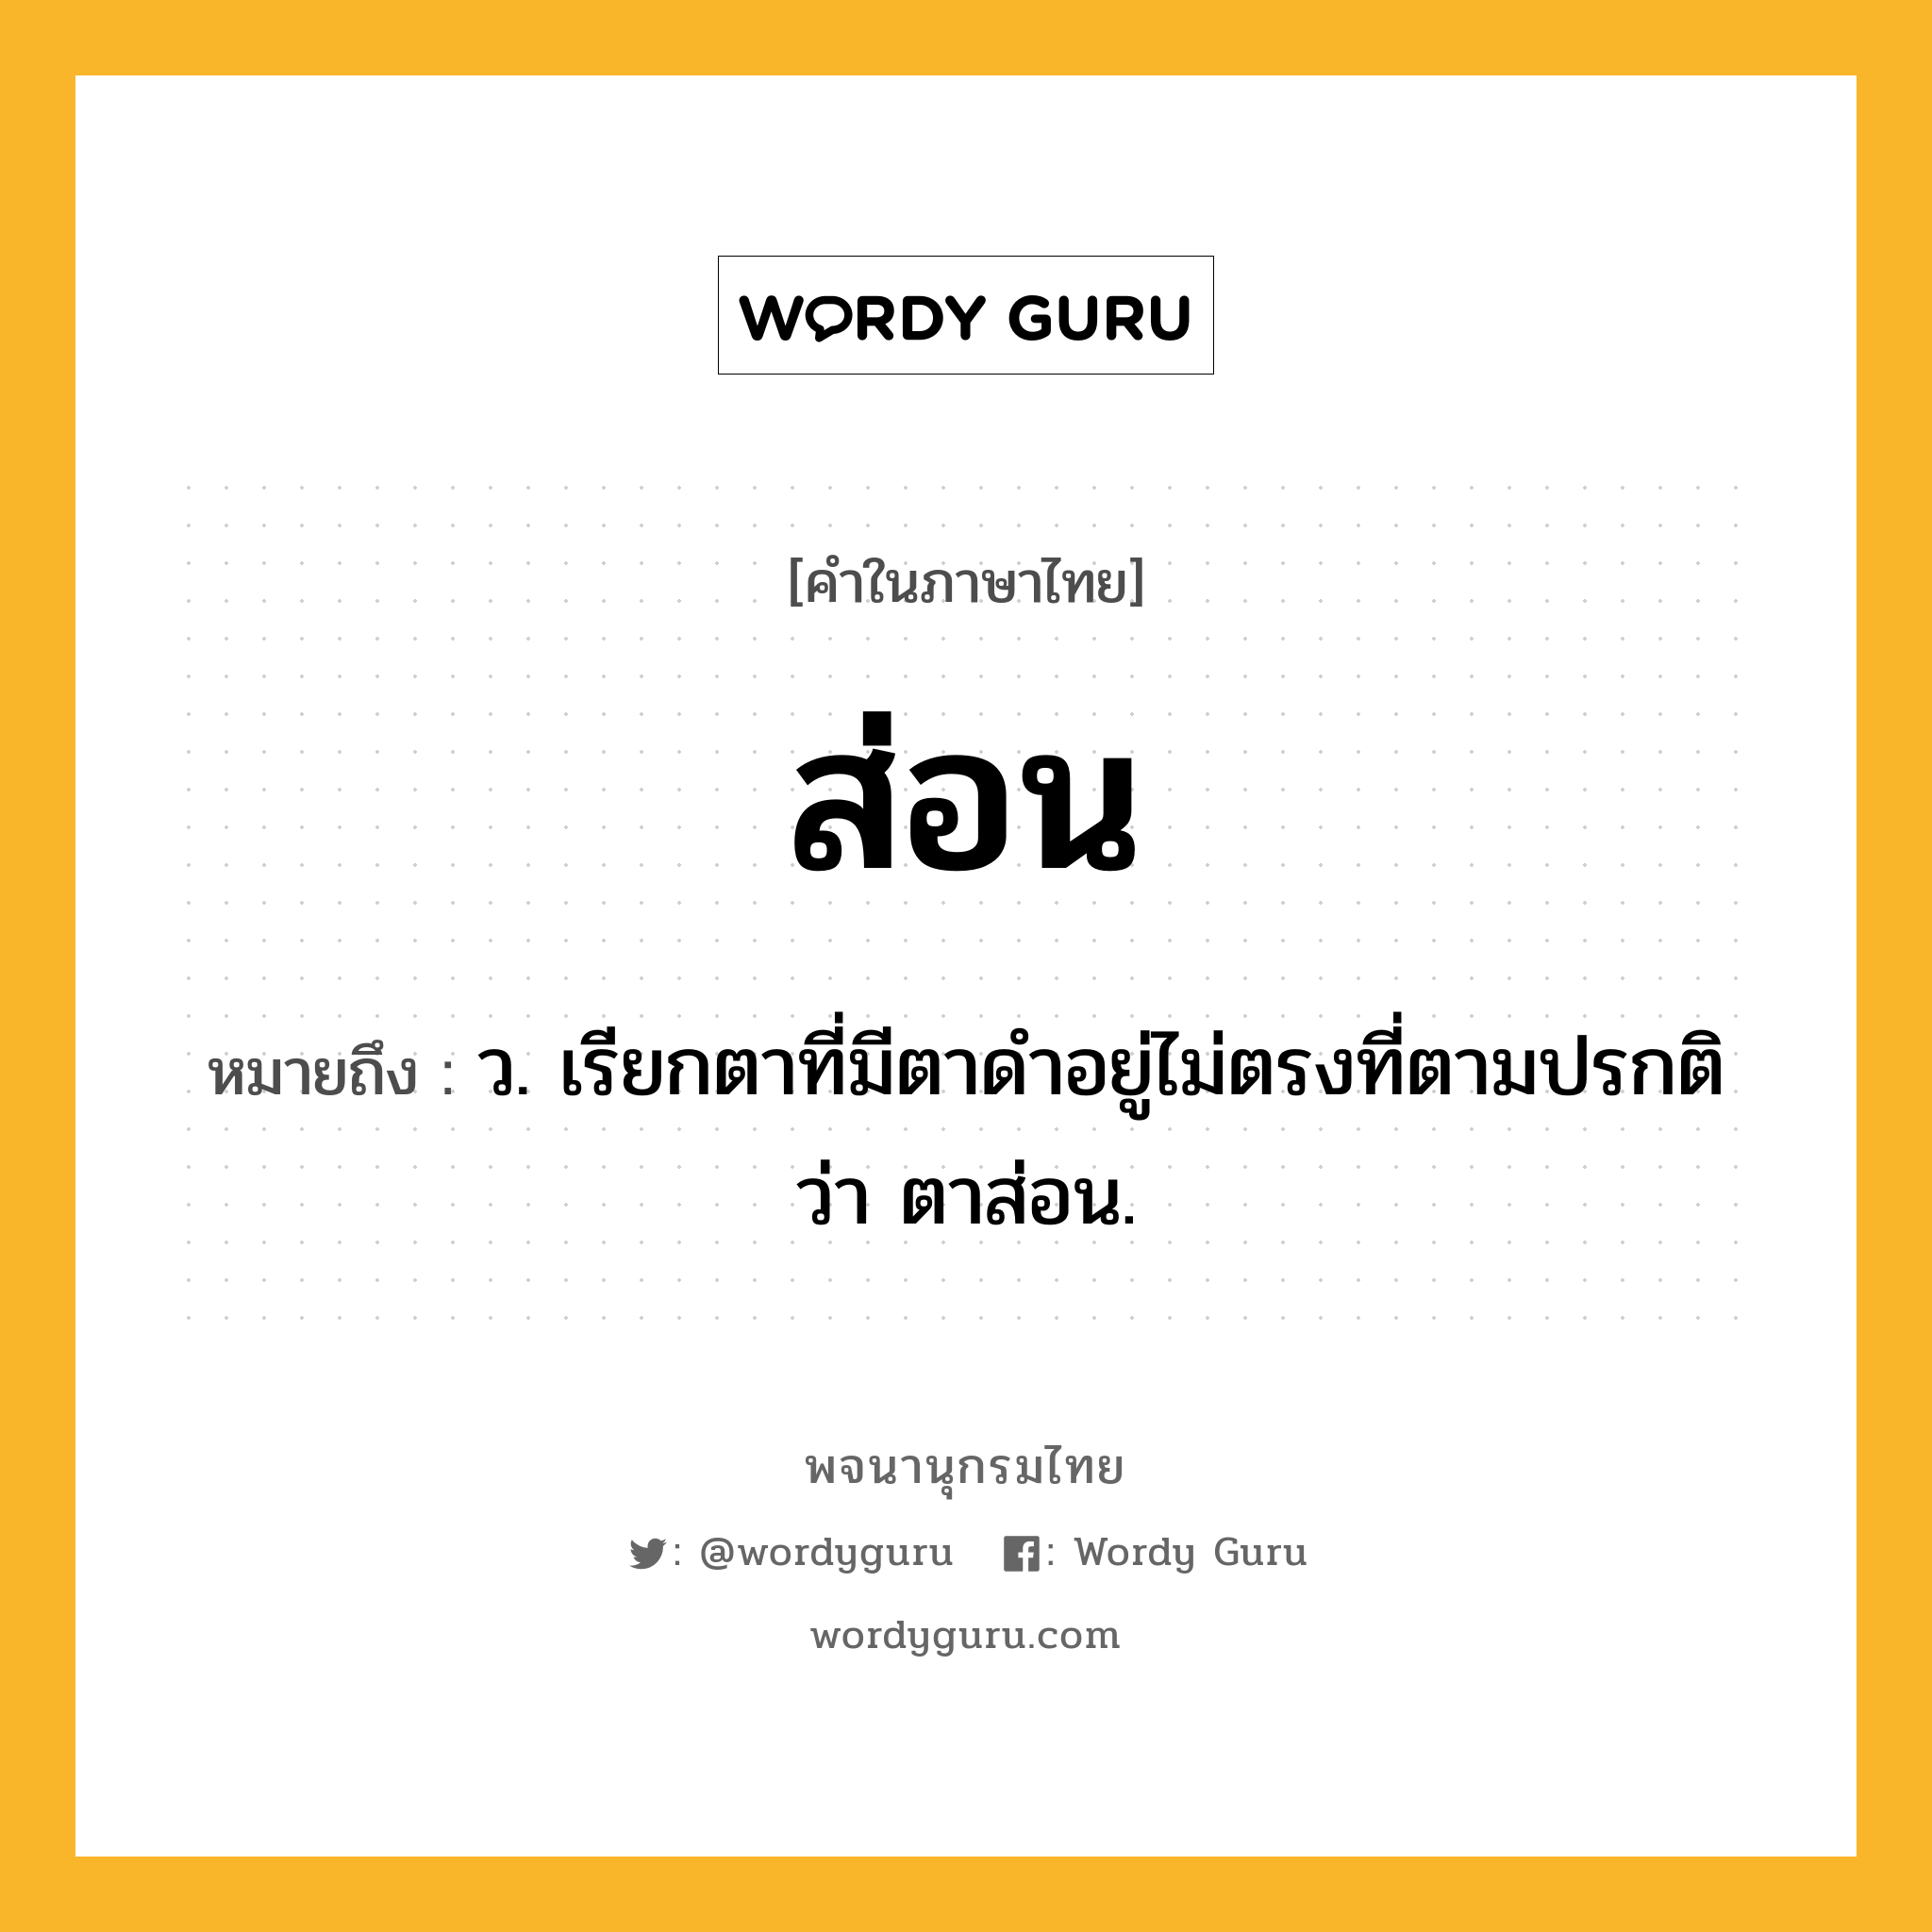 ส่อน หมายถึงอะไร?, คำในภาษาไทย ส่อน หมายถึง ว. เรียกตาที่มีตาดําอยู่ไม่ตรงที่ตามปรกติว่า ตาส่อน.